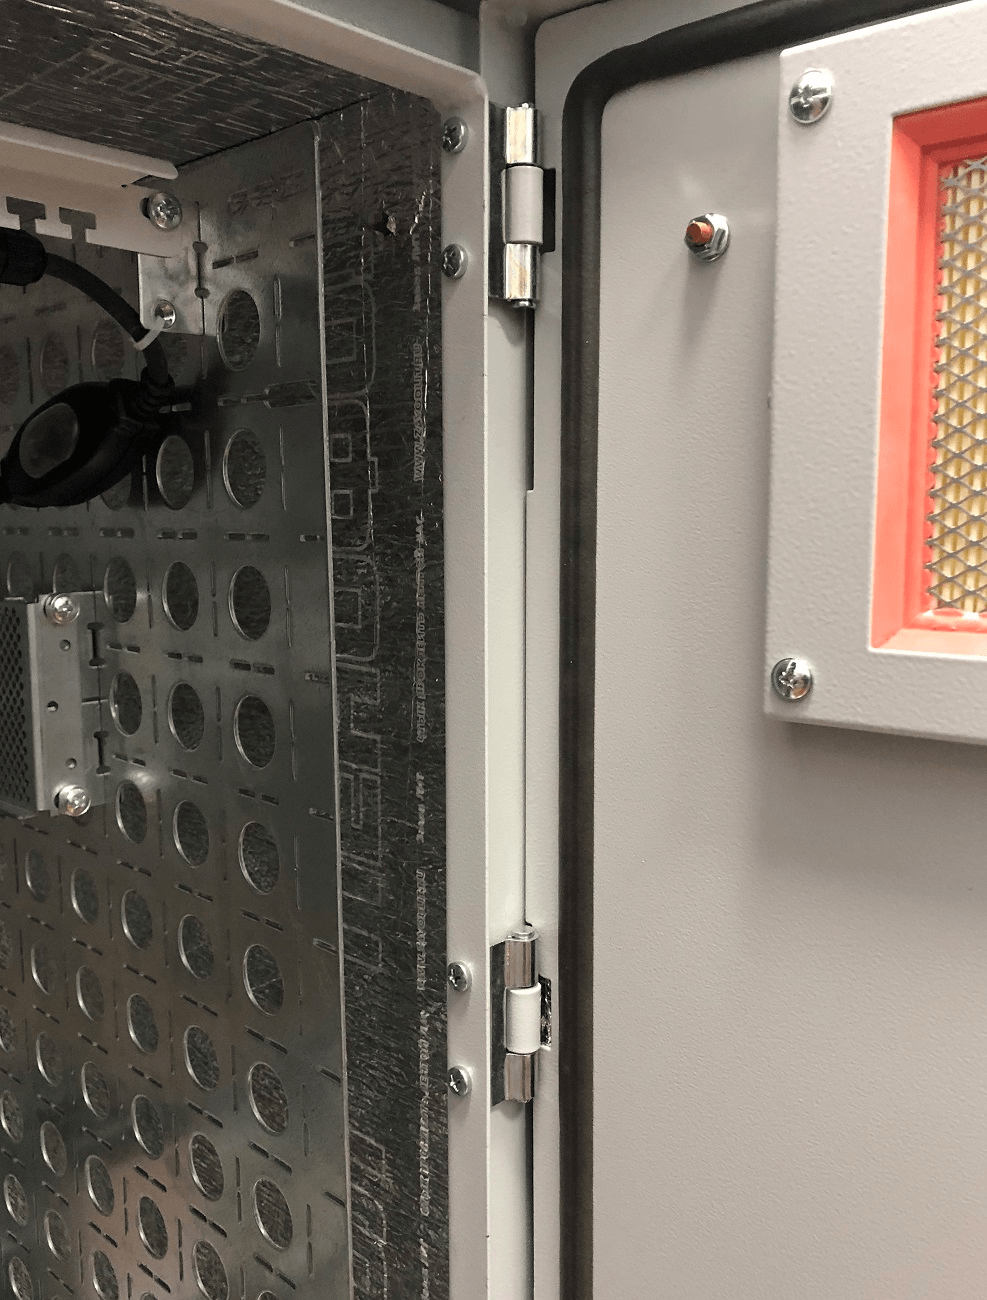 Шкаф всепогодный настенный 6U (Ш600 × Г500), нерж. сталь. компл. Т1 с контроллером MC1 и датчиками от ЦМО